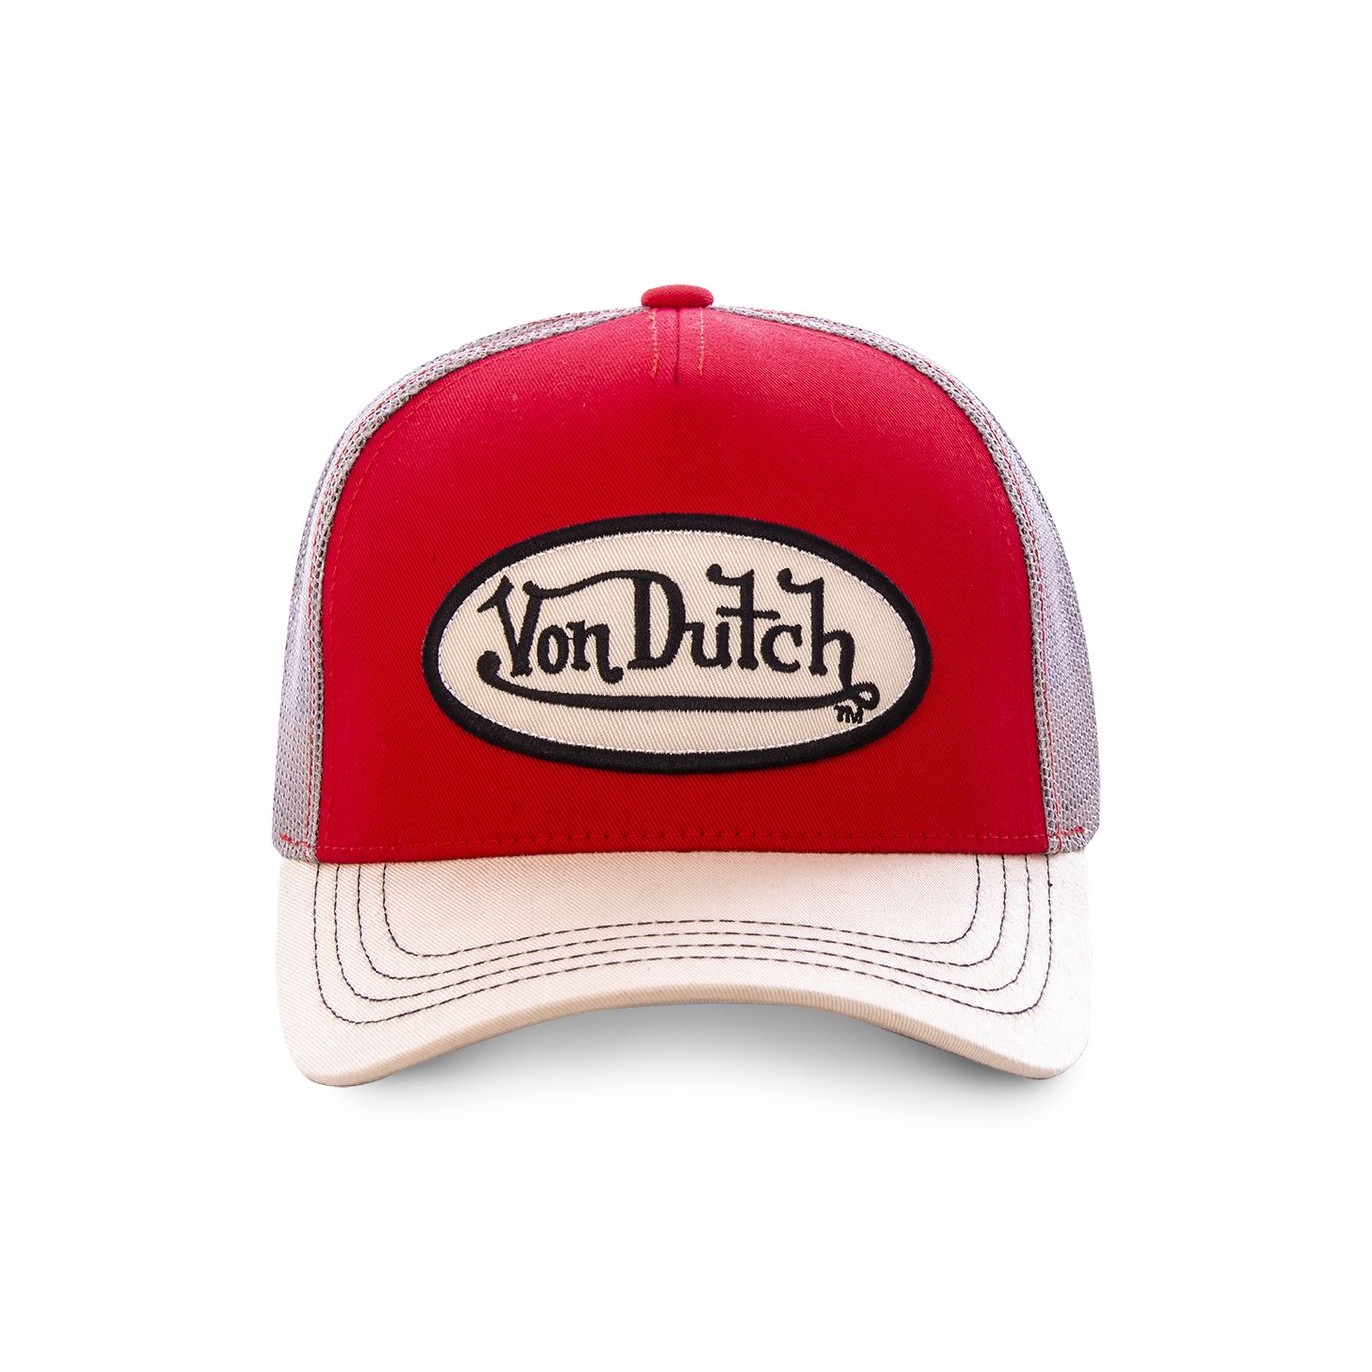 Von Dutch baseball cap in red and white - Von Dutch